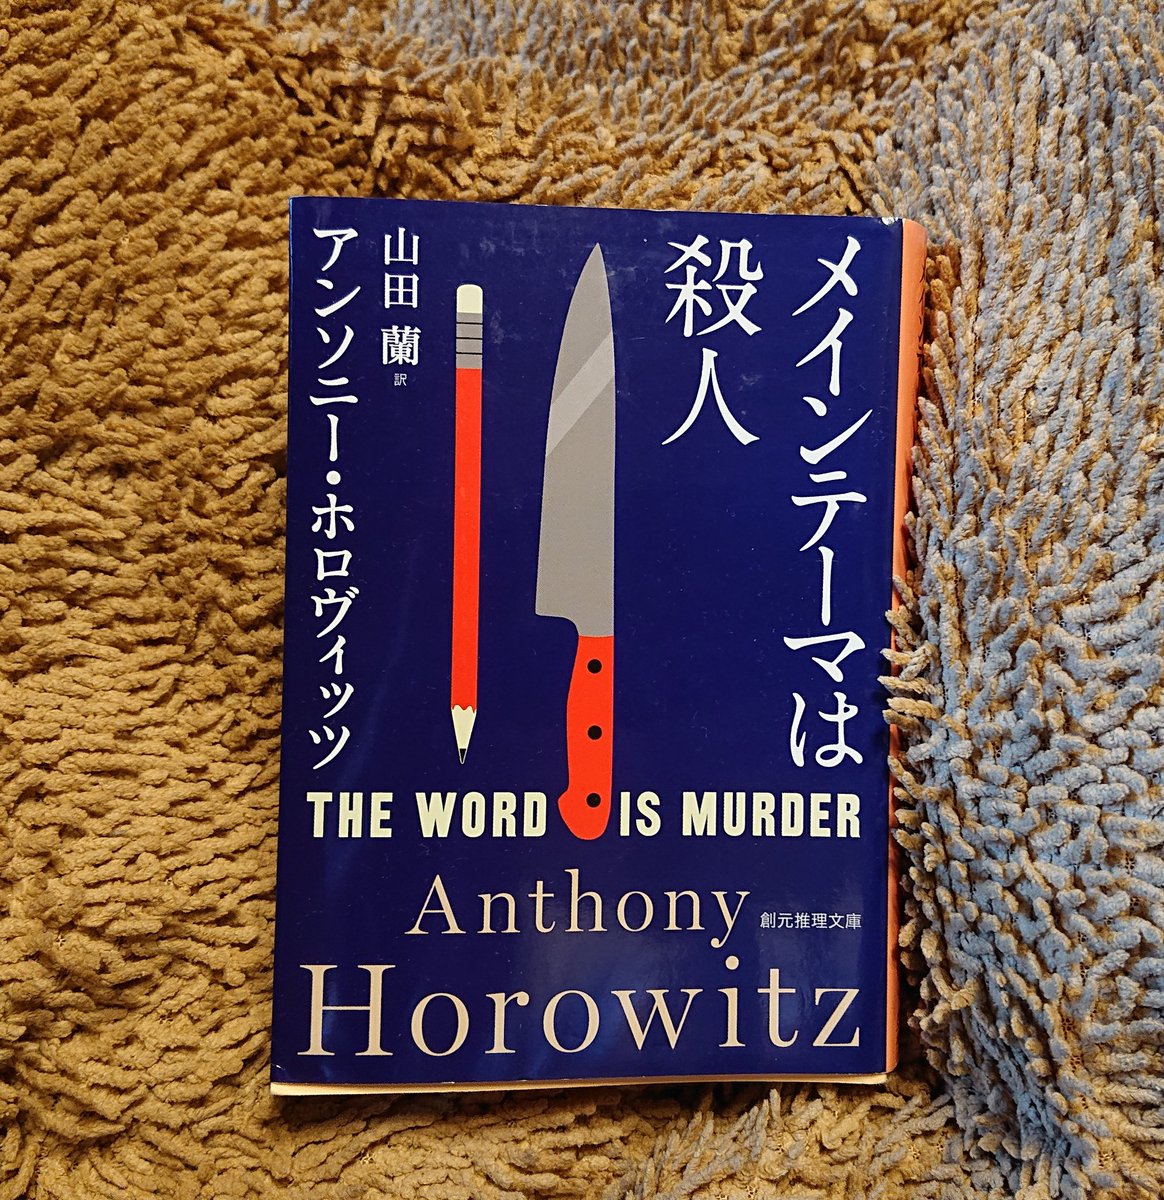 一人称で書かれた謎解きミステリーの教本というべき秀作。お見事です。それにしてもタイトル、、もう少しタイトルが良ければあと10万部は売れたのに。#メインテーマは殺人 #TheWordIsMurder #AnthonyHorowitz